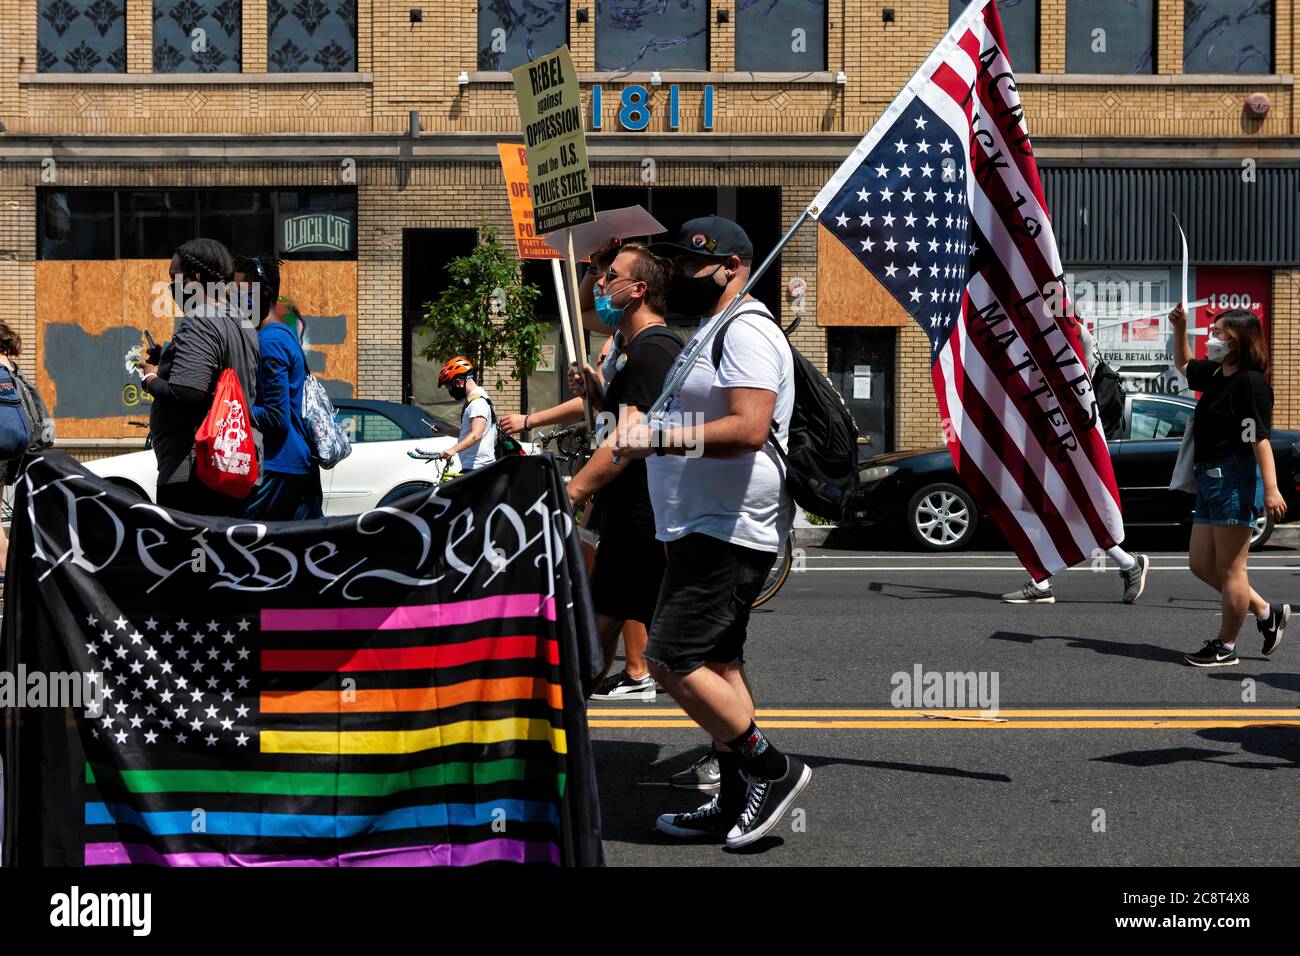 Regenbogen amerikanische Flagge, die sagt "Wir das Volk" und Protestler mit Flagge auf dem Kopf auf März gegen Trump's Police State, Washington, DC, USA Stockfoto